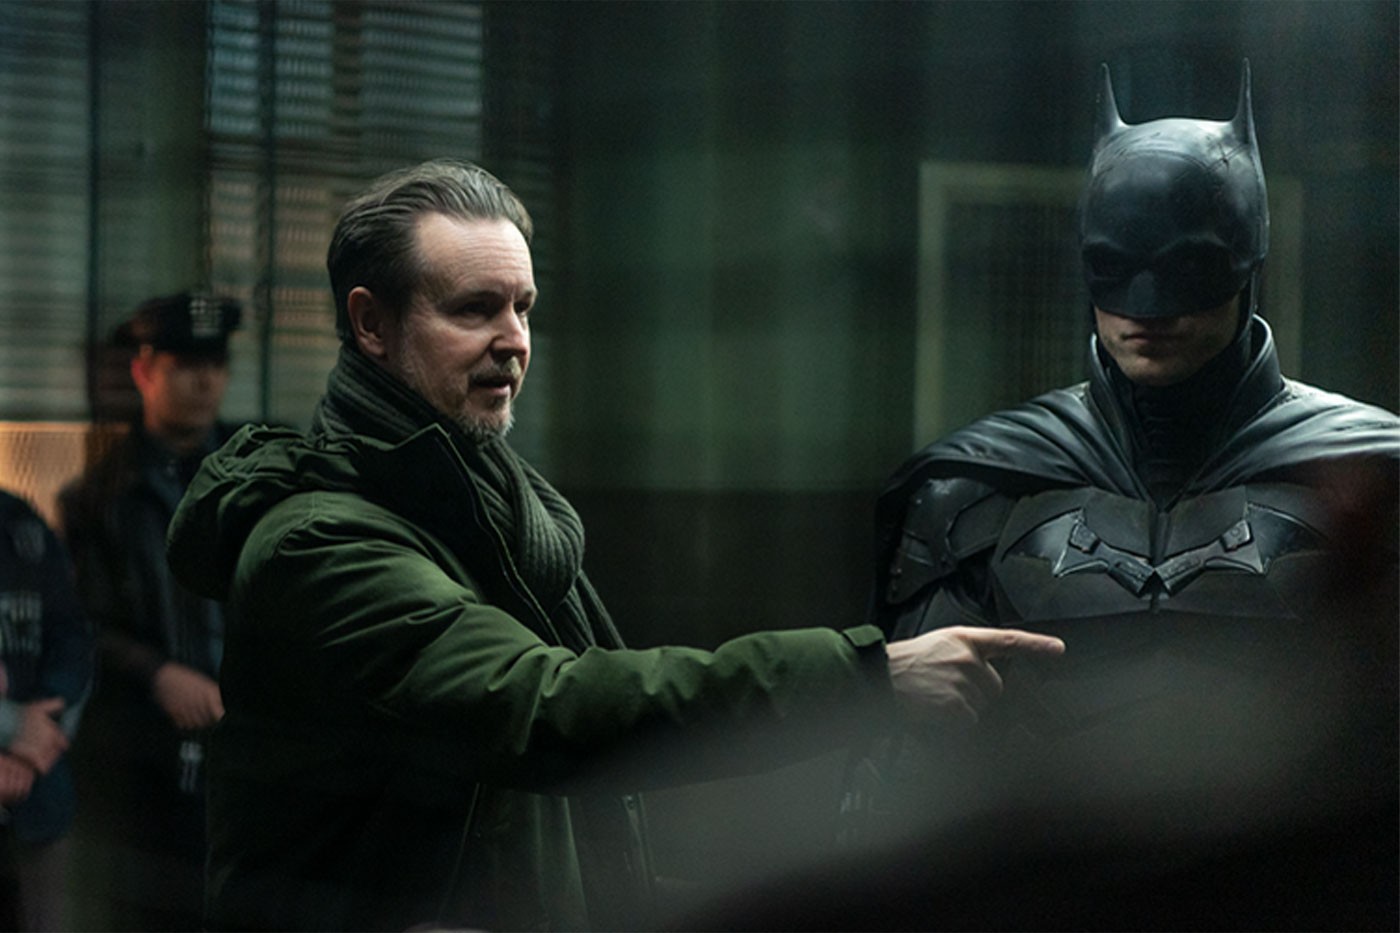 导演 Matt Reeves 与 Robert Pattinson 谈及《蝙蝠侠 The Batman》电影与角色塑造过程